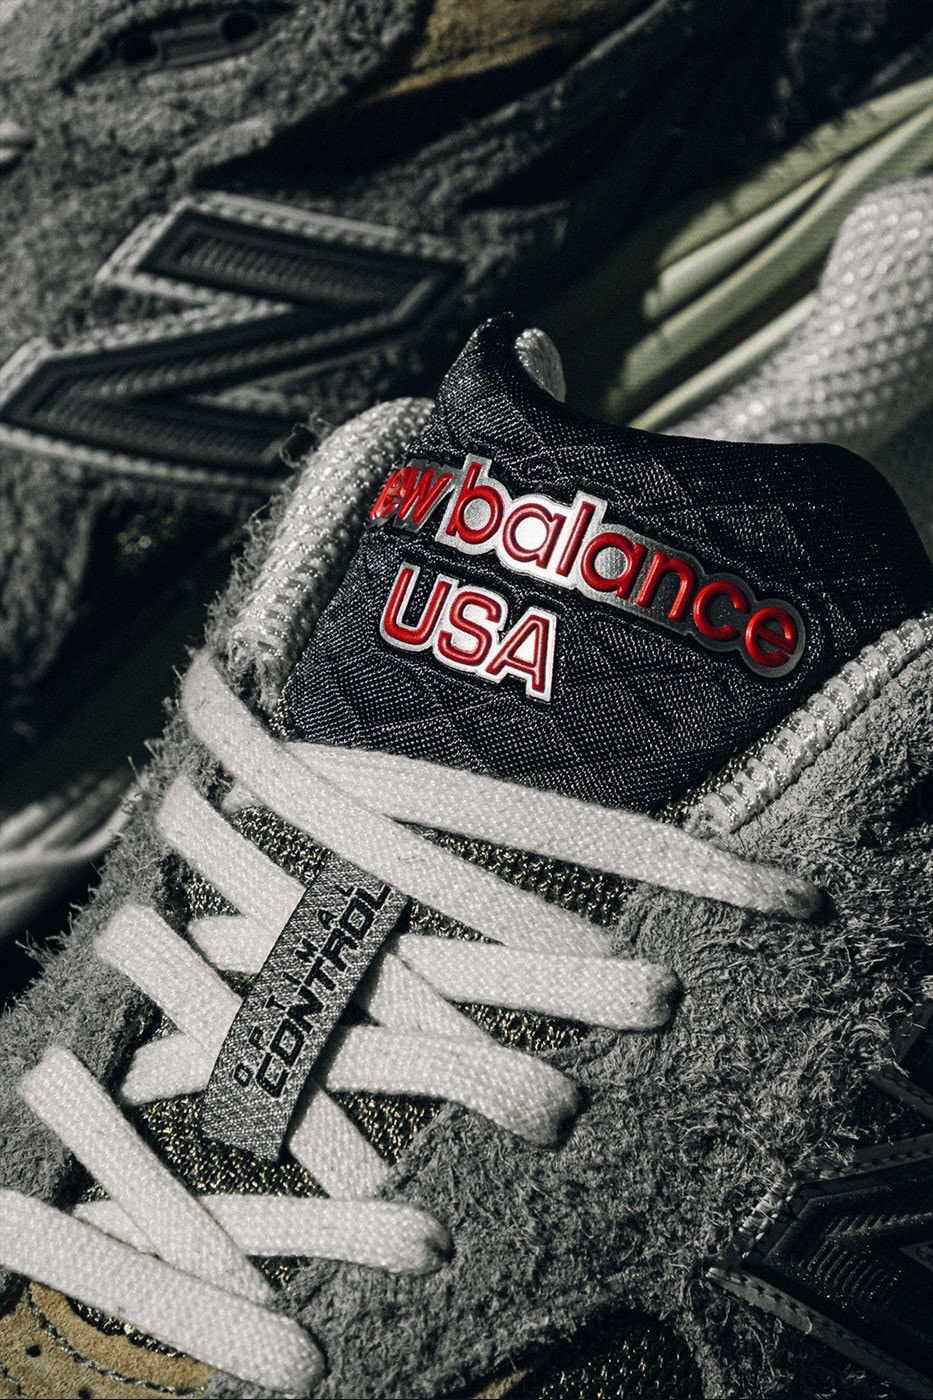 獨家近賞 New Balance MADE in USA 全新 990v2、990v3 鞋款